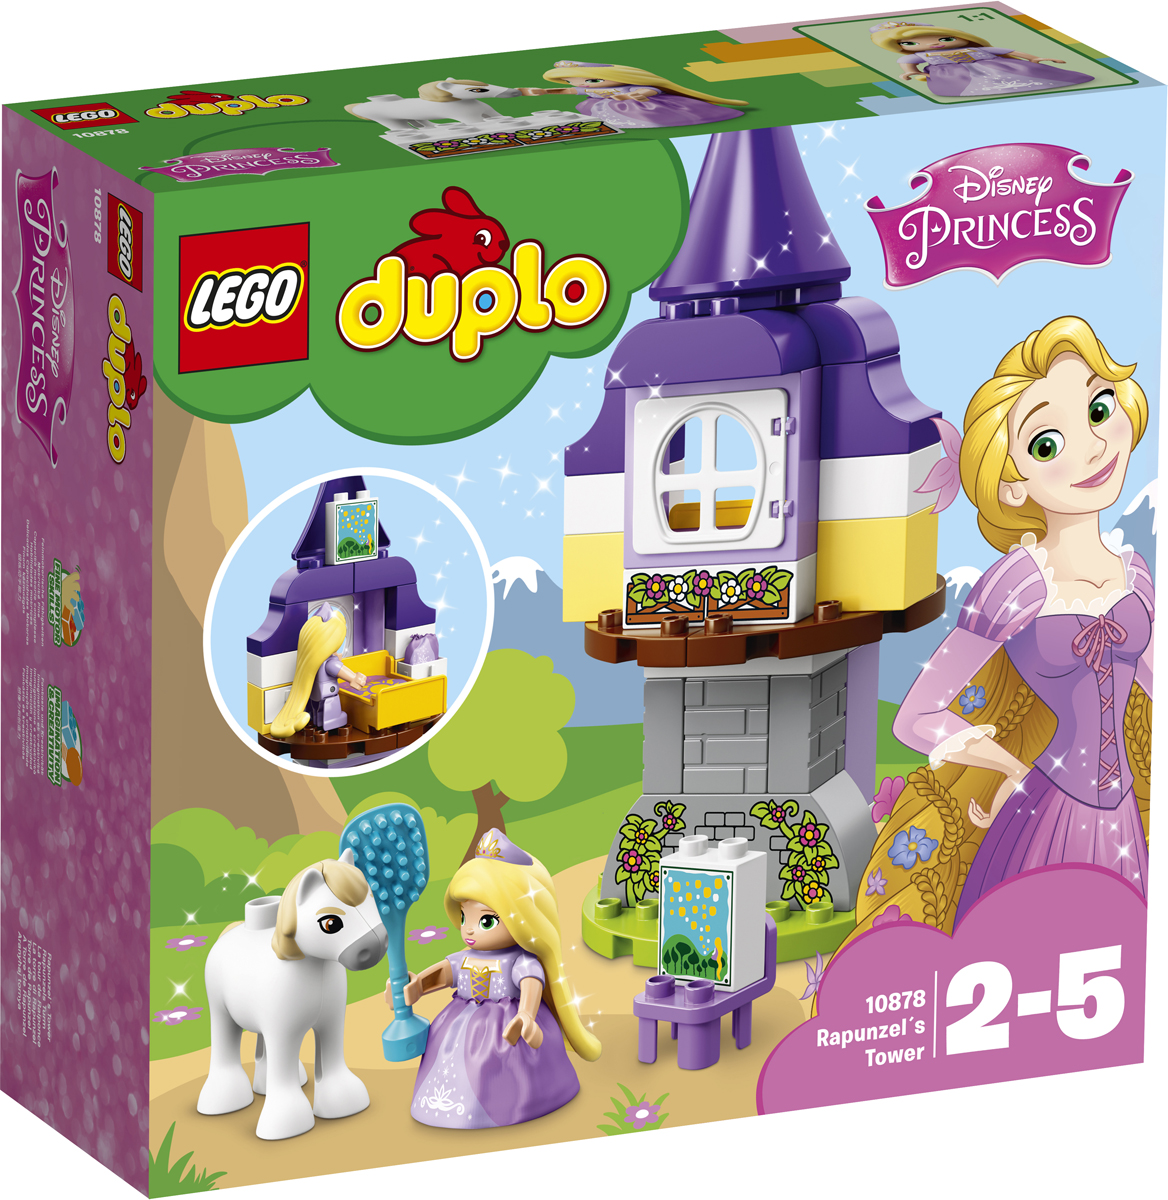 LEGO DUPLO Princess 10878 Башня Рапунцель Конструктор